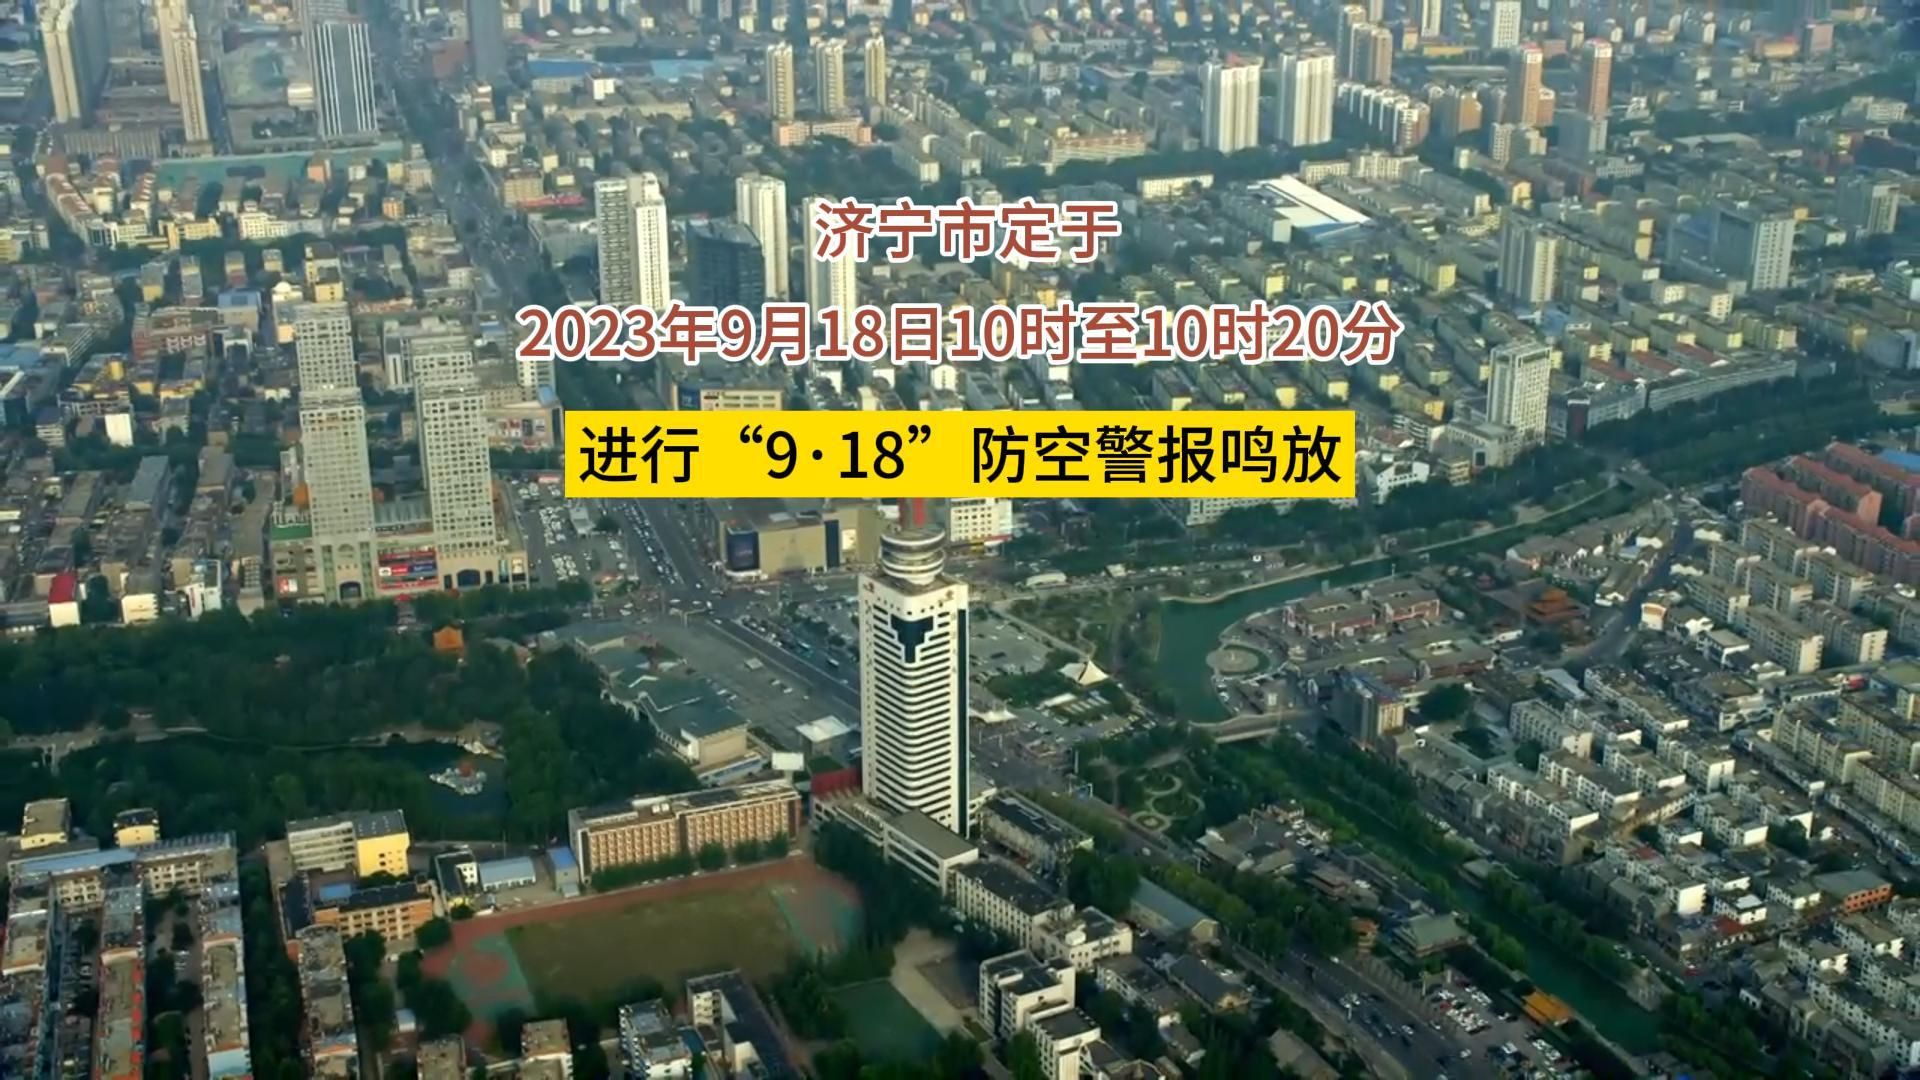 更济宁丨济宁市定于2023年9月18日10时至10时20分进行“9·18”防空警报鸣放